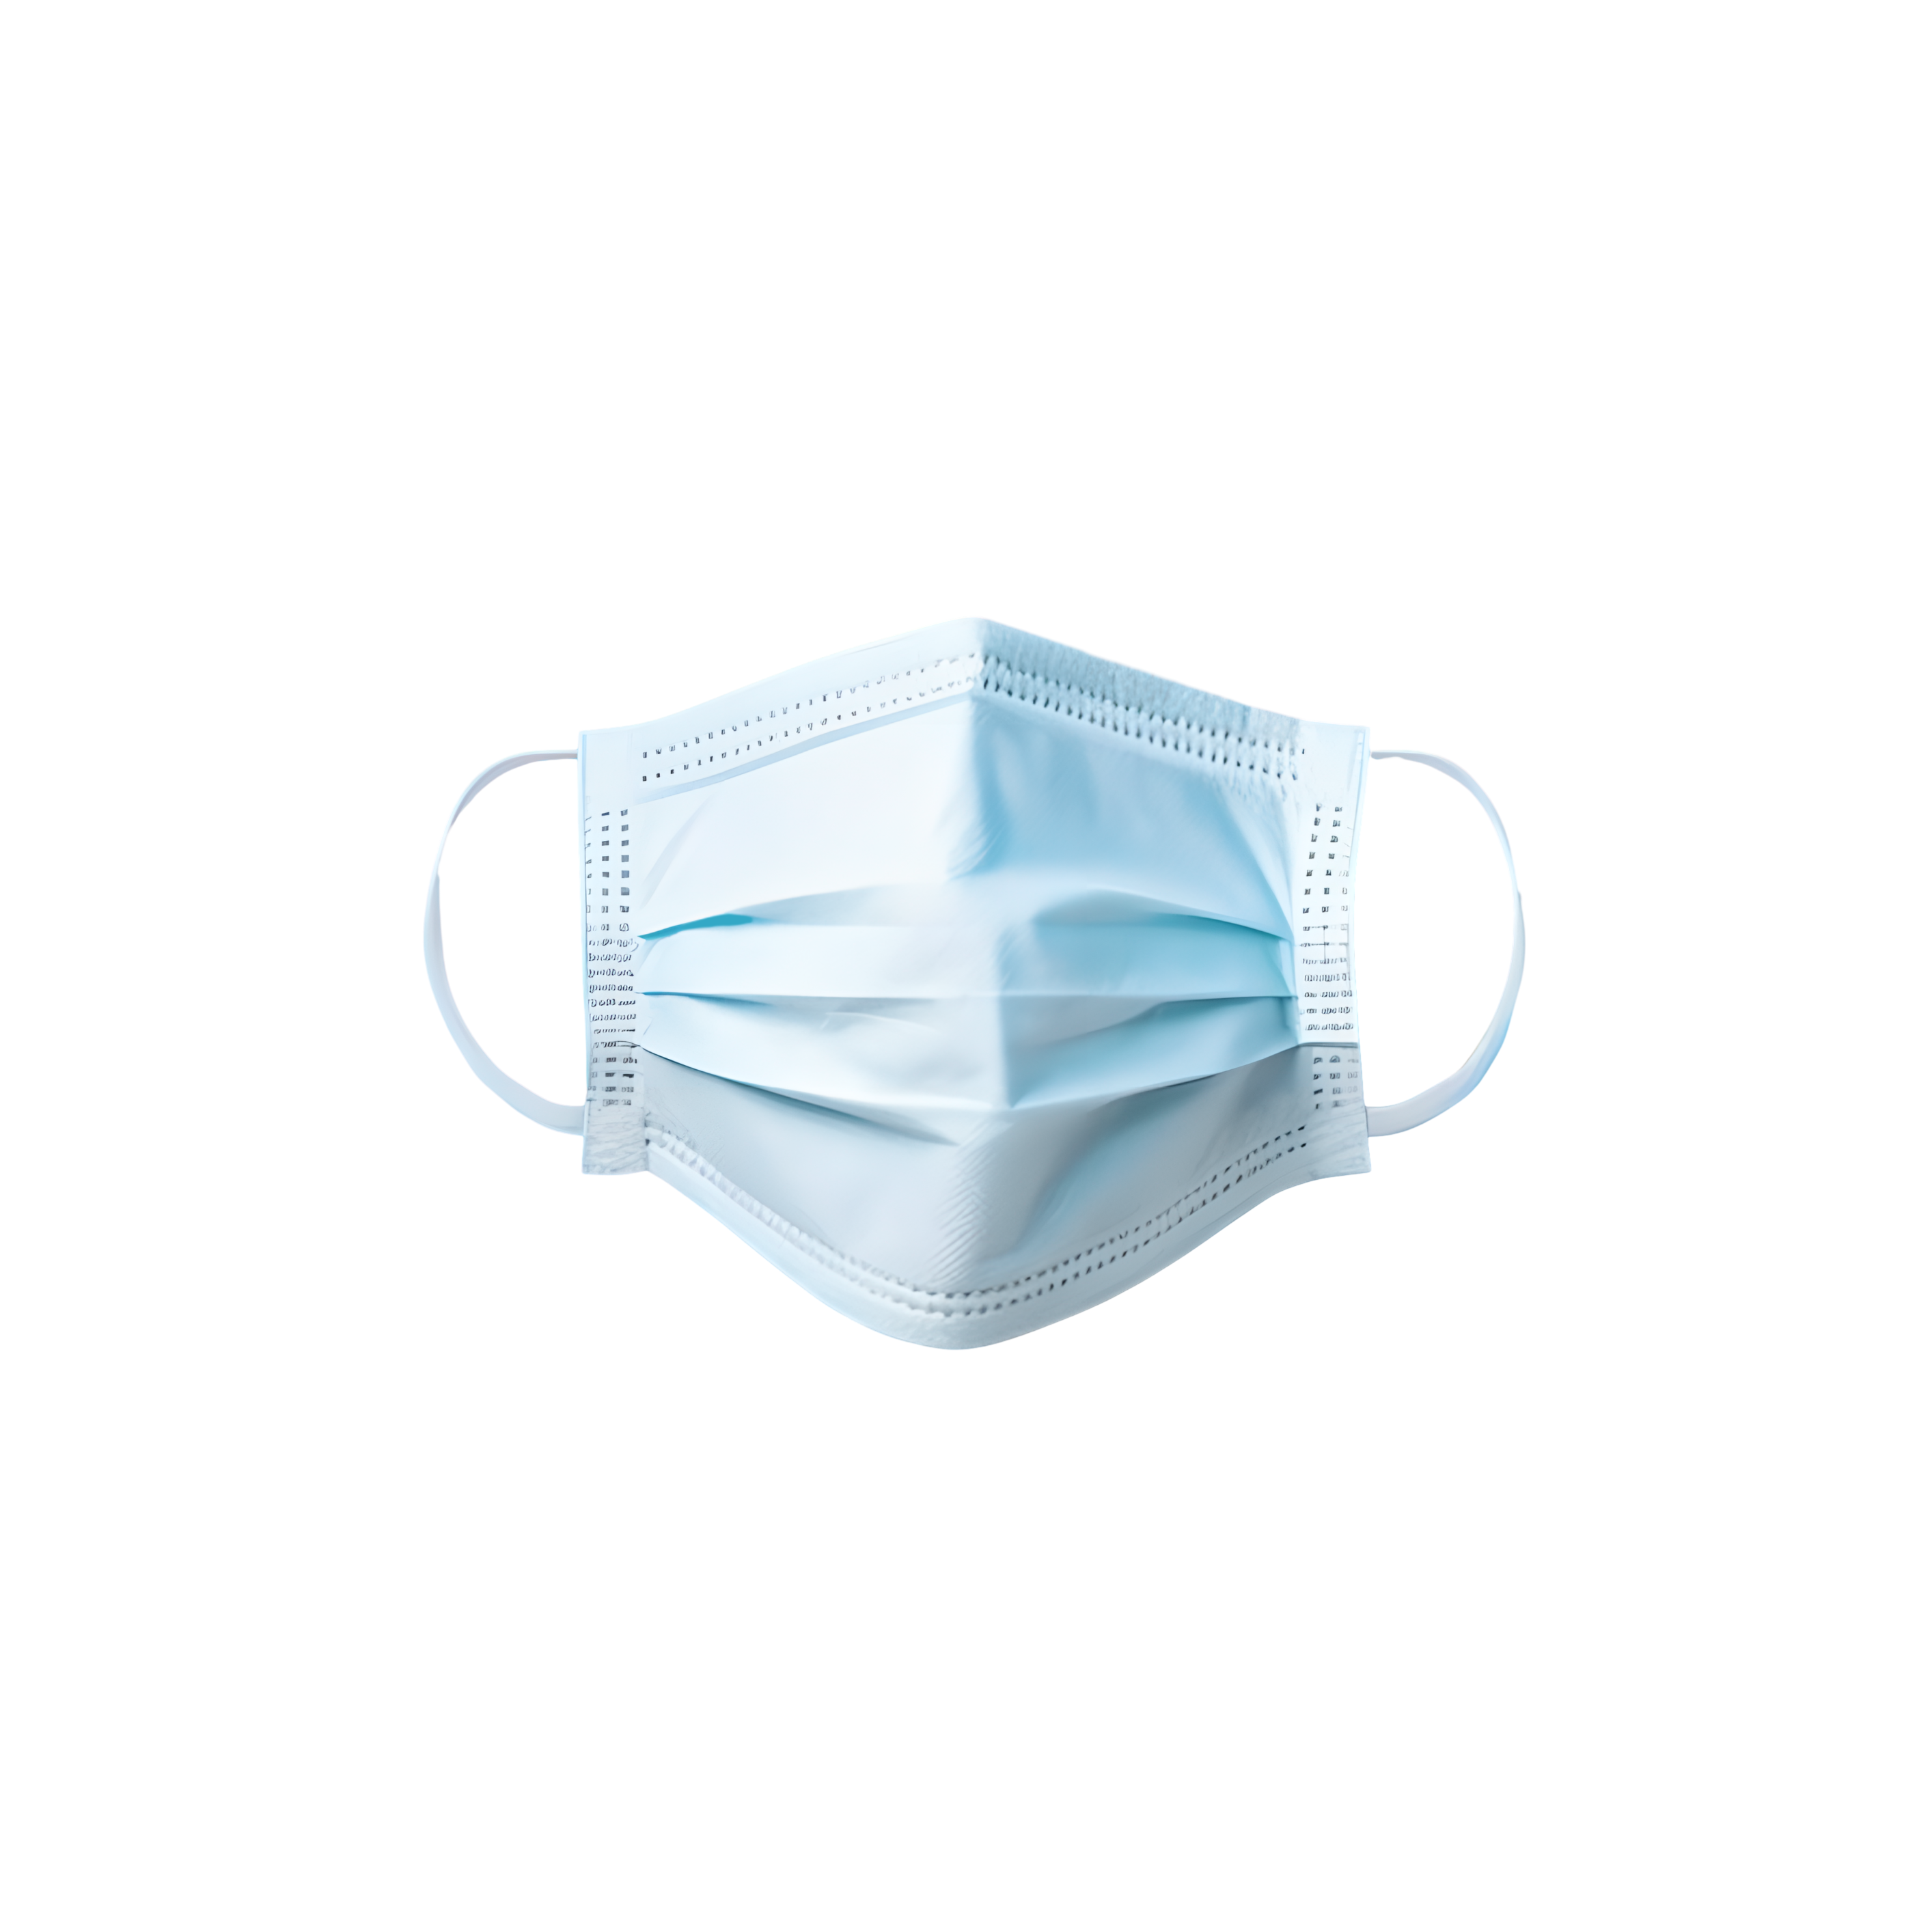 商首页设计素材免扣医疗一次性医用口罩透明背景素材智能设计一键抠图